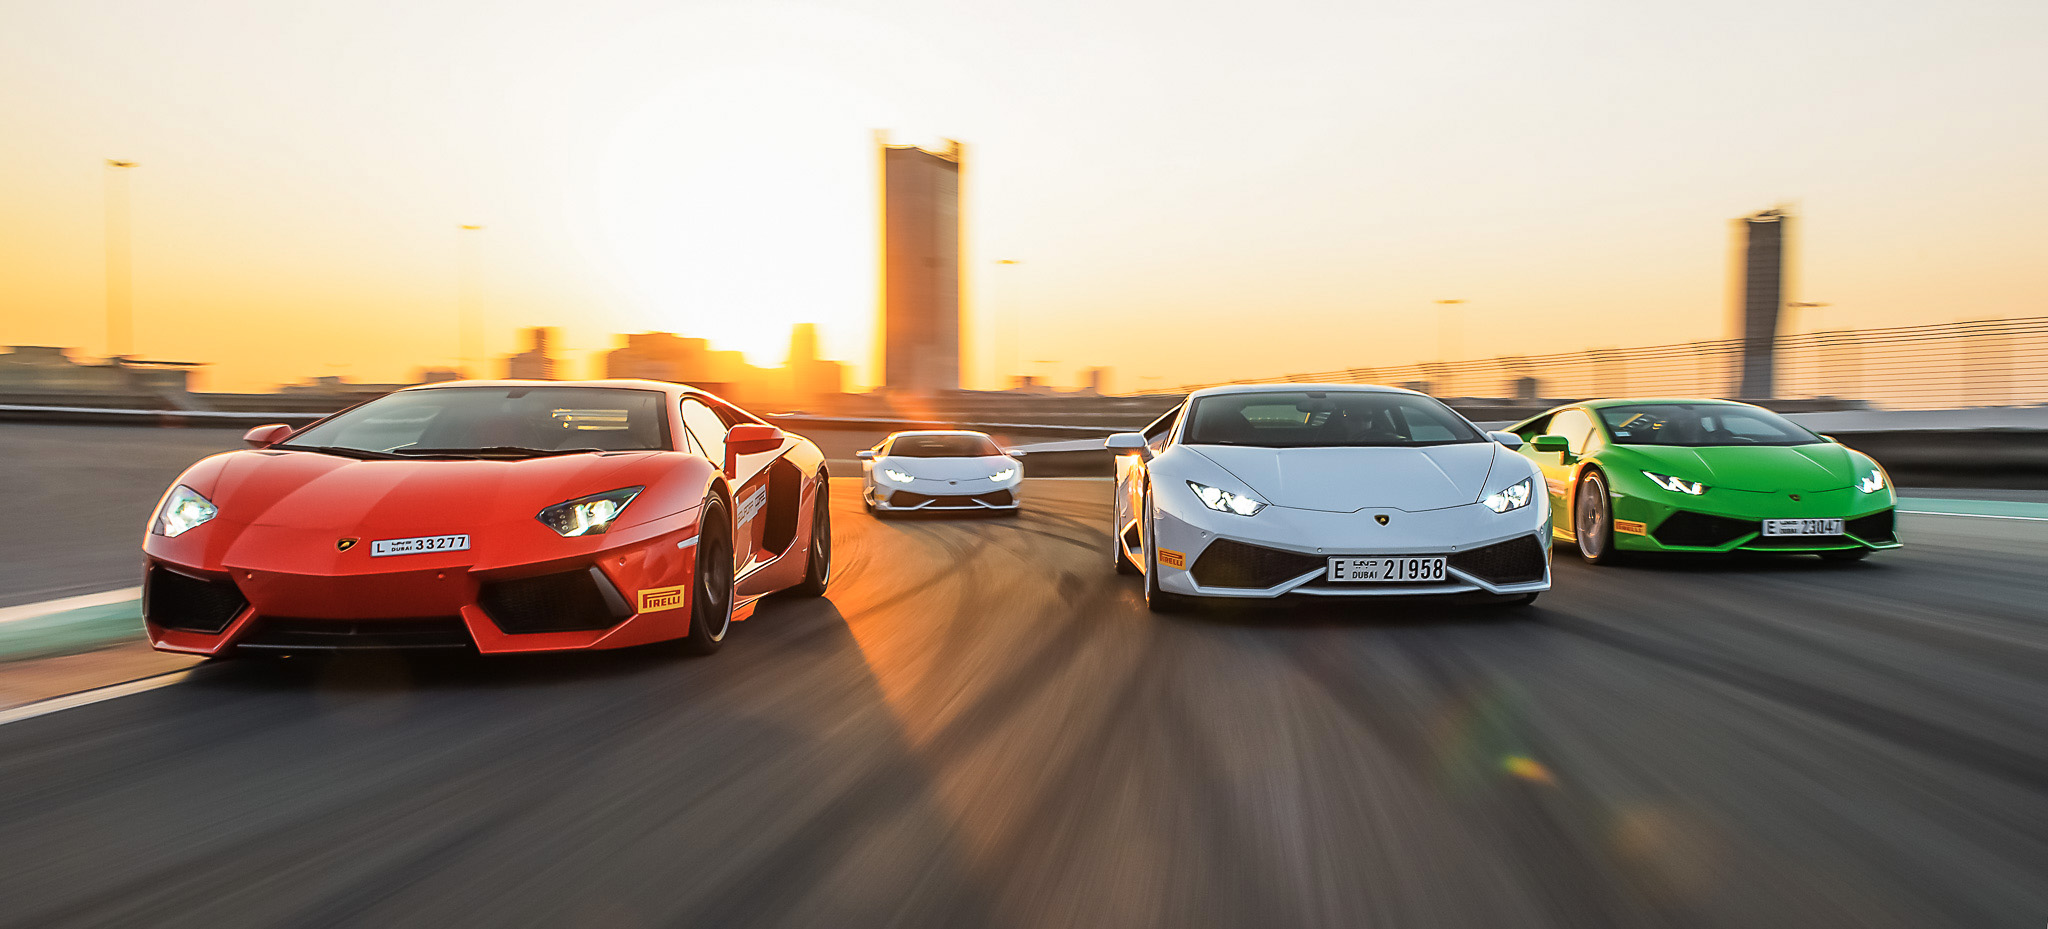  Automobili Lamborghini svela il programma Esperienza e Accademia 2015